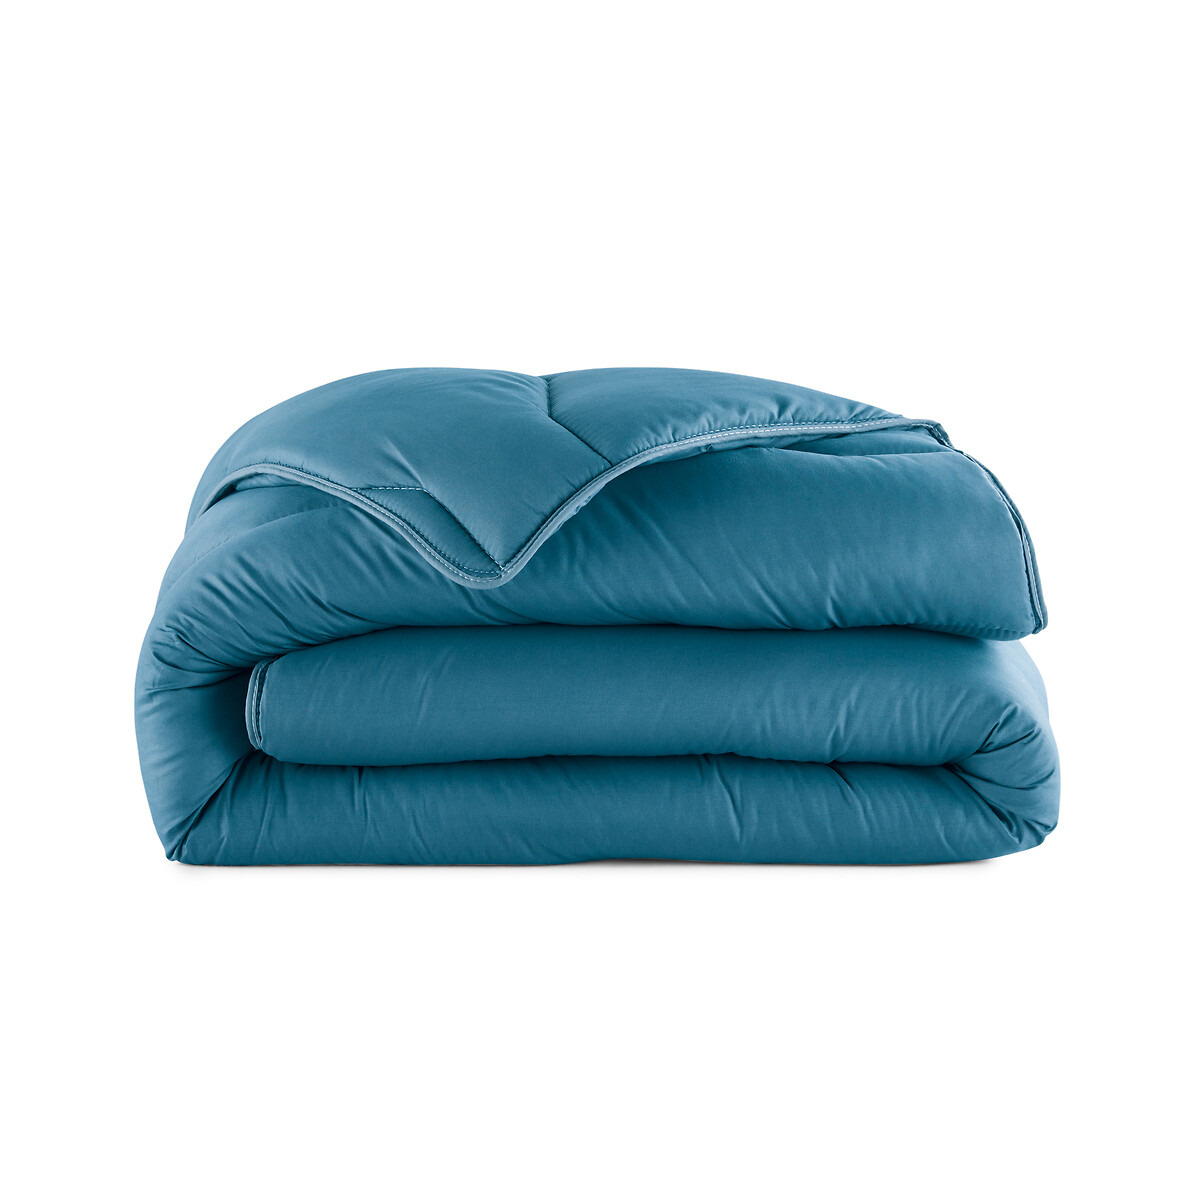 Одеяло LA REDOUTE INTERIEURS 100 полиэстер специально для лета 240 x 220 см синий, размер 240 x 220 см - фото 2